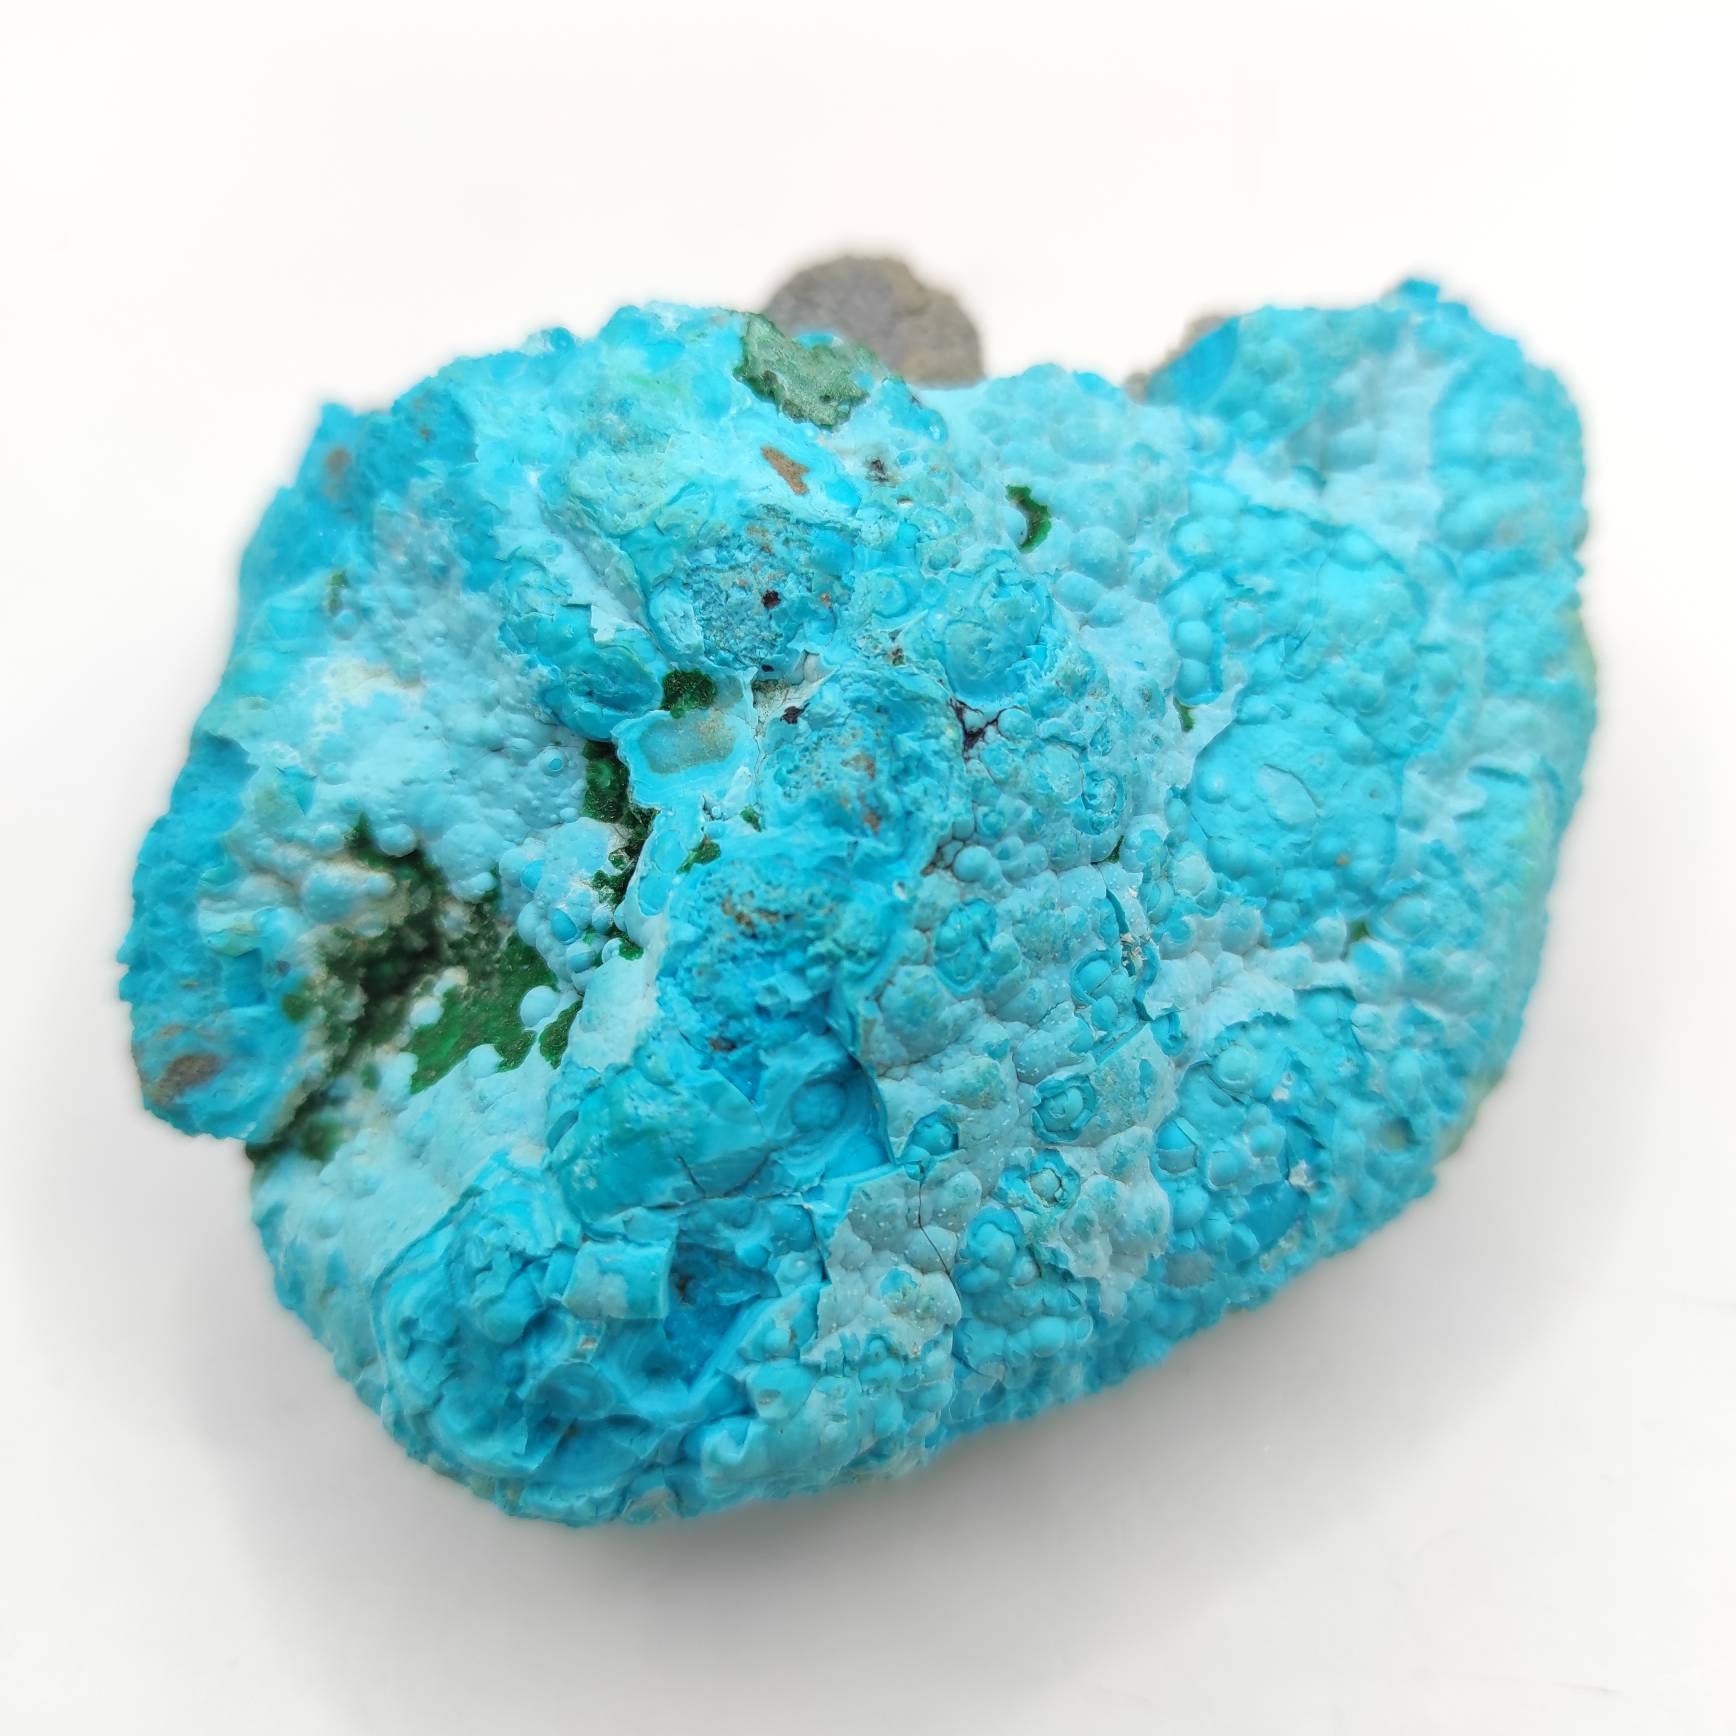 148g Blue Chrysocolla Crystal Mineral Specimen Natural Blue Chrysocolla Congo Raw Minerals Rough Unique Natural Raw Crystal Cluster Specimen